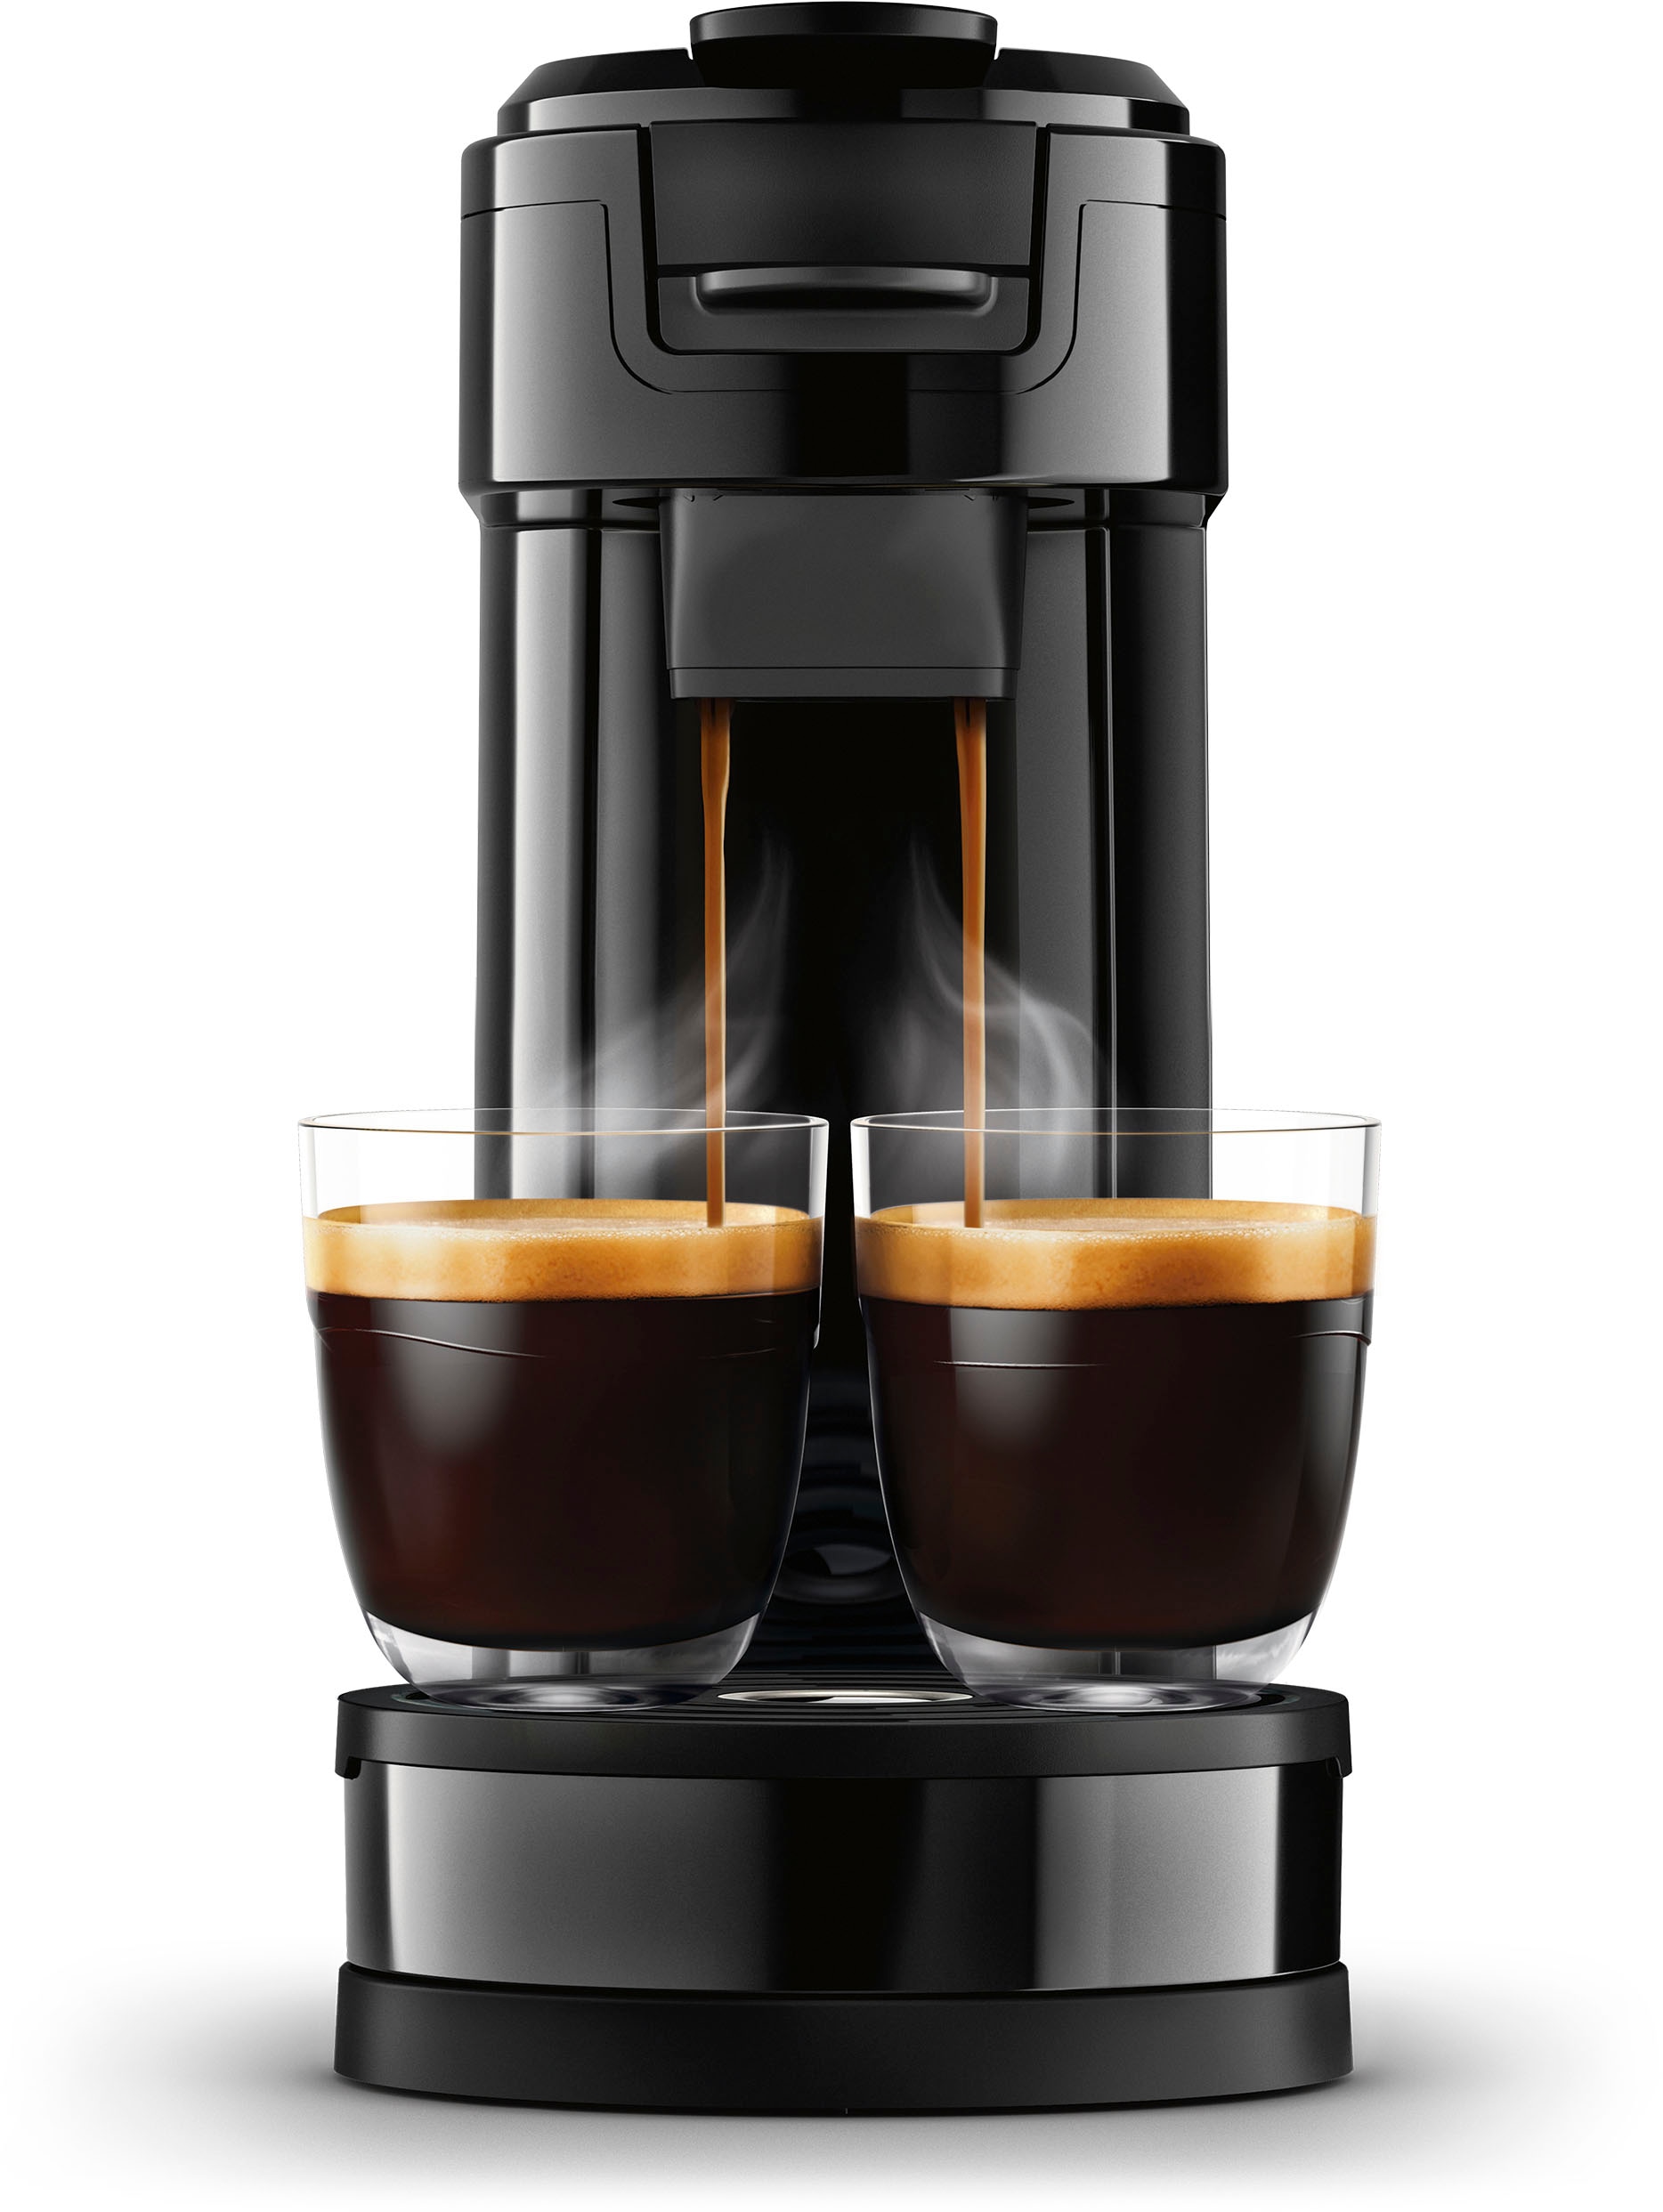 Philips Senseo Kaffeepadmaschine »Switch HD6592/64, 26% recyceltem Plastik,  Kaffee Boost Technologie«, 1 l Kaffeekanne, Crema Plus, inkl. Kaffeepaddose  Wert €9,90 UVP online bestellen